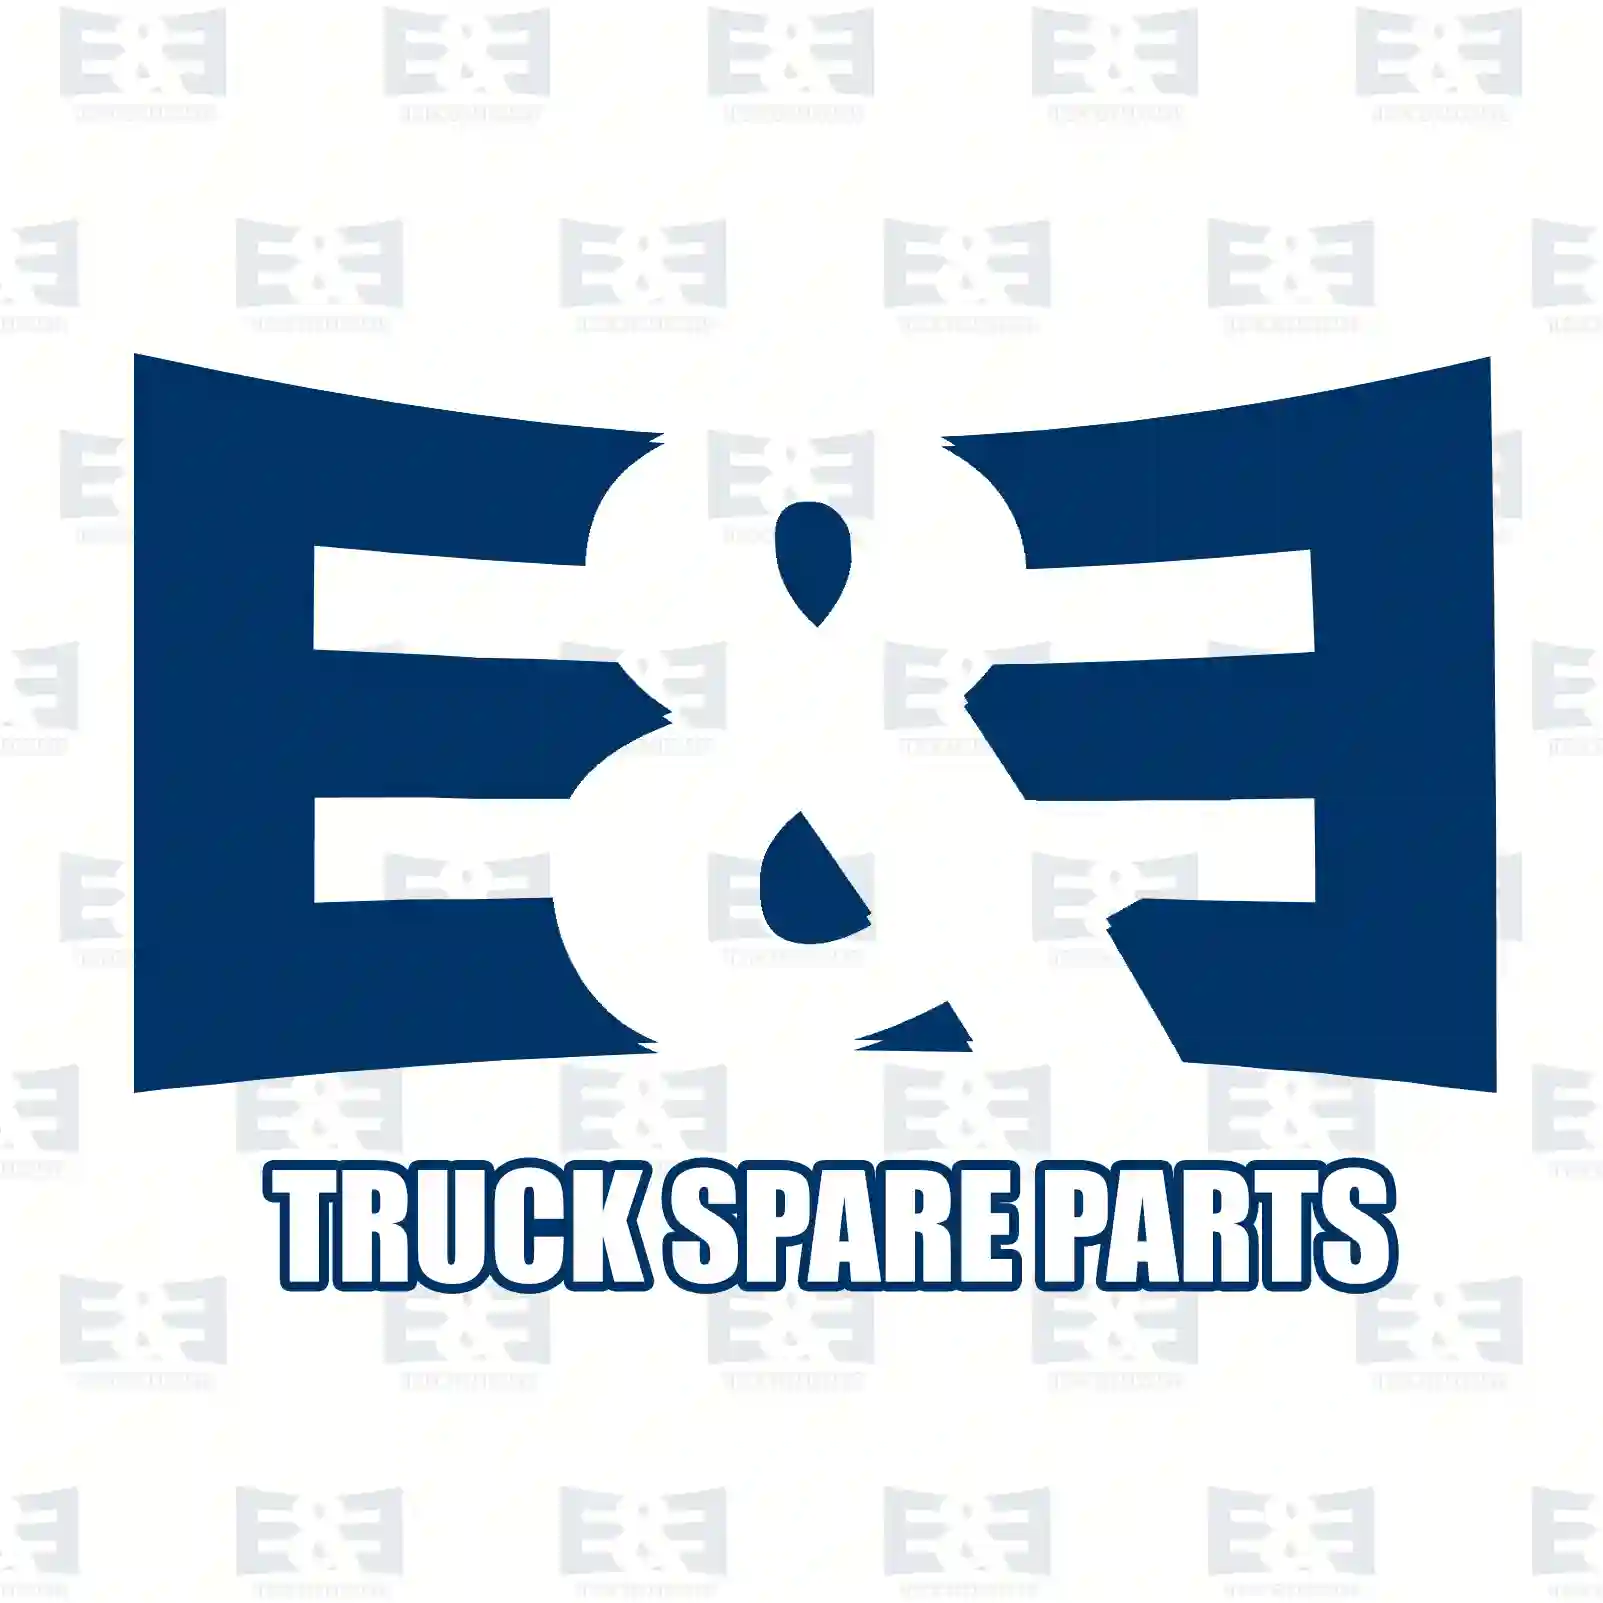 Push-in-connector, 2E2293107, #YOK ||  2E2293107 E&E Truck Spare Parts | Truck Spare Parts, Auotomotive Spare Parts Push-in-connector, 2E2293107, #YOK ||  2E2293107 E&E Truck Spare Parts | Truck Spare Parts, Auotomotive Spare Parts